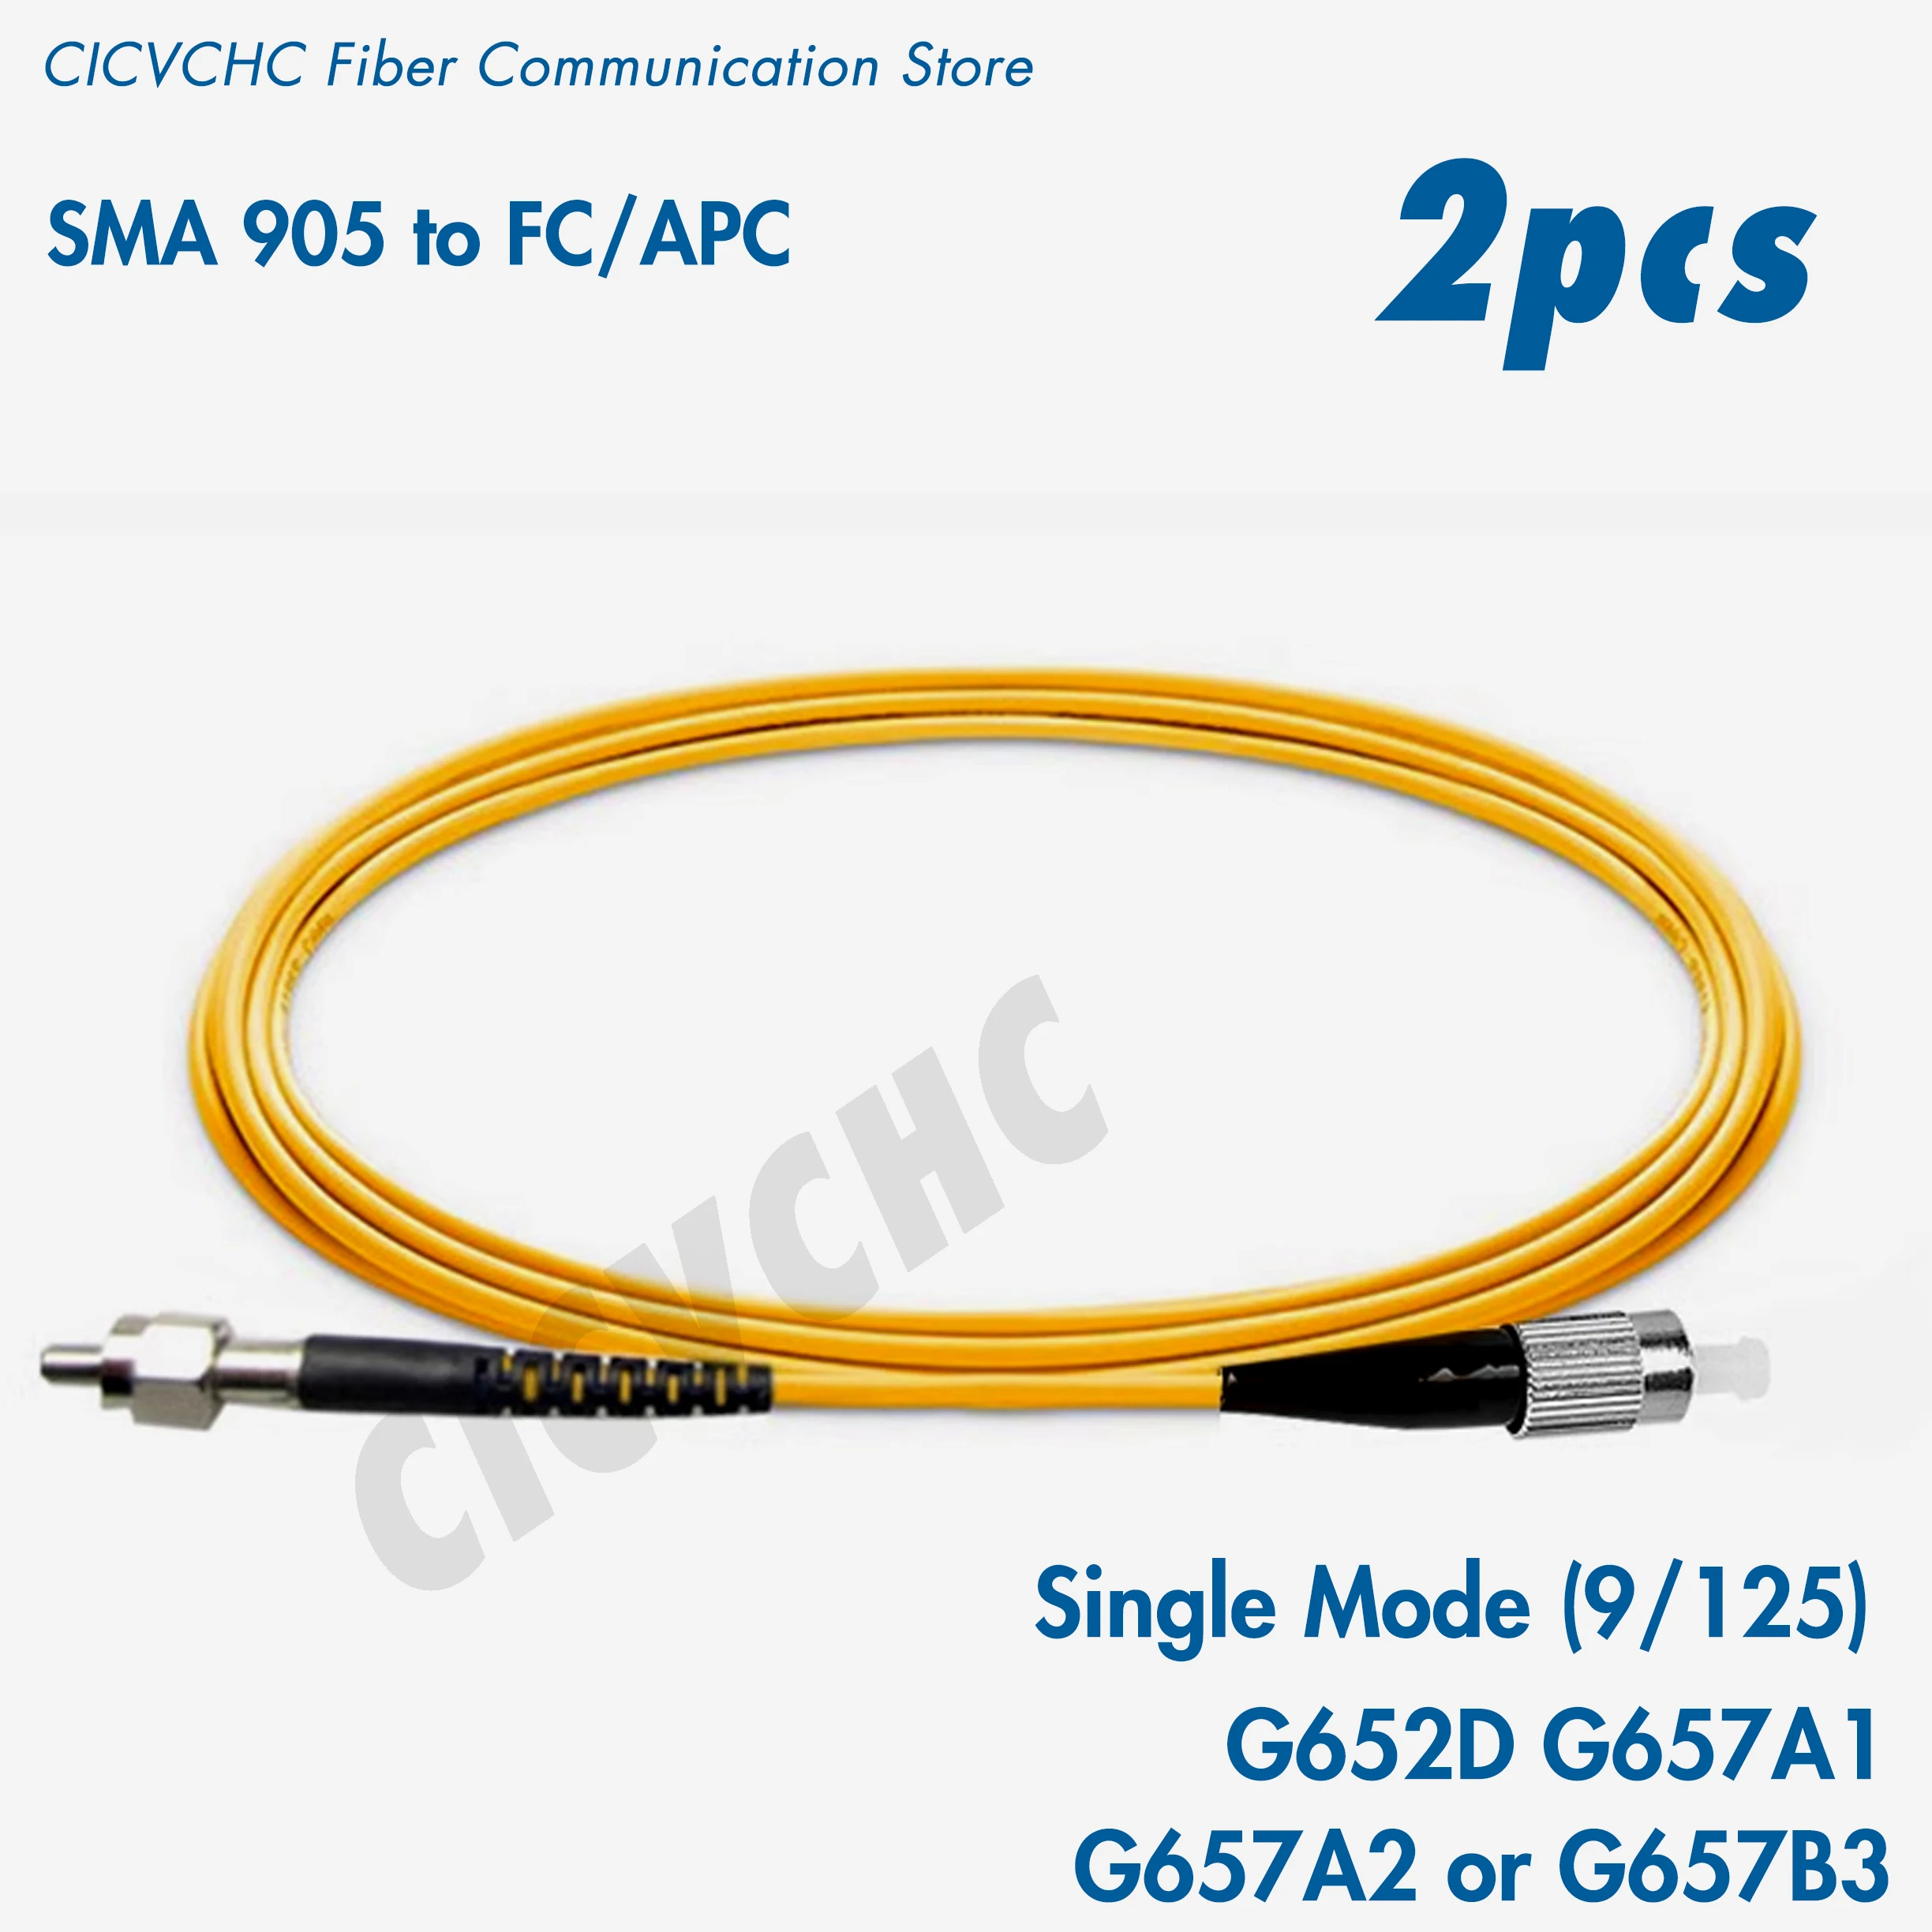 2шт Симплексный Оптоволоконный патч-корд SMA905-FC/UPC-SM (9/125) G657B3, G657A2, G657A1 или G652D-кабель длиной 1 м, 2 м или 5 м-3,0 мм